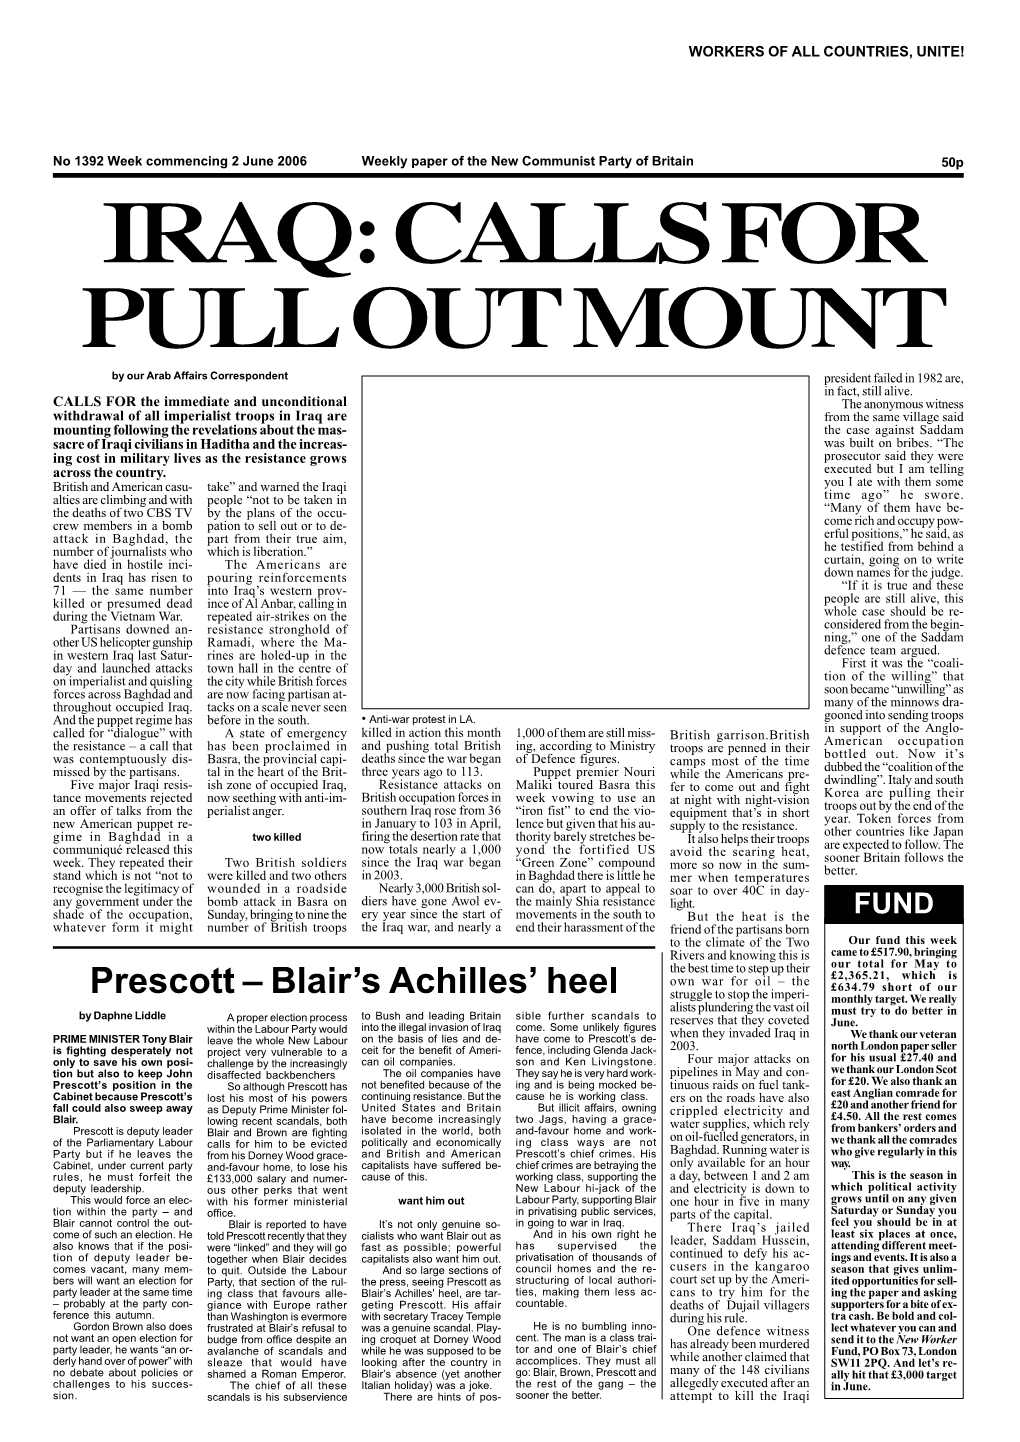 Prescott – Blair's Achilles' Heel